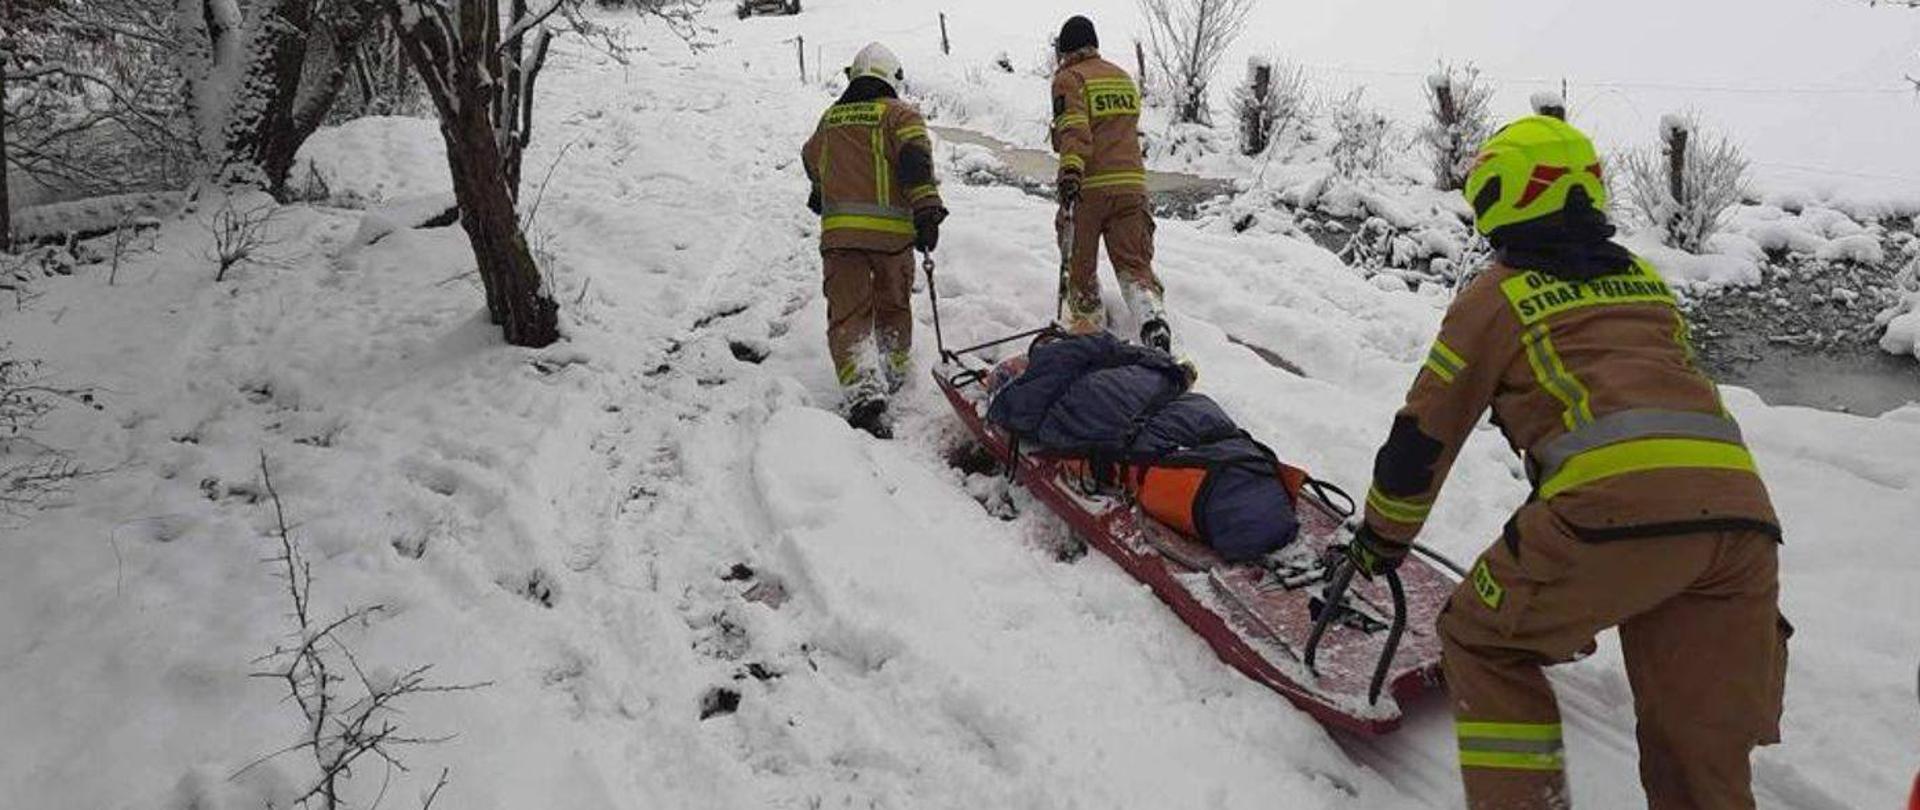 Zima, dużo śniegu. Strażacy transportują chorego do karetki na saniach.